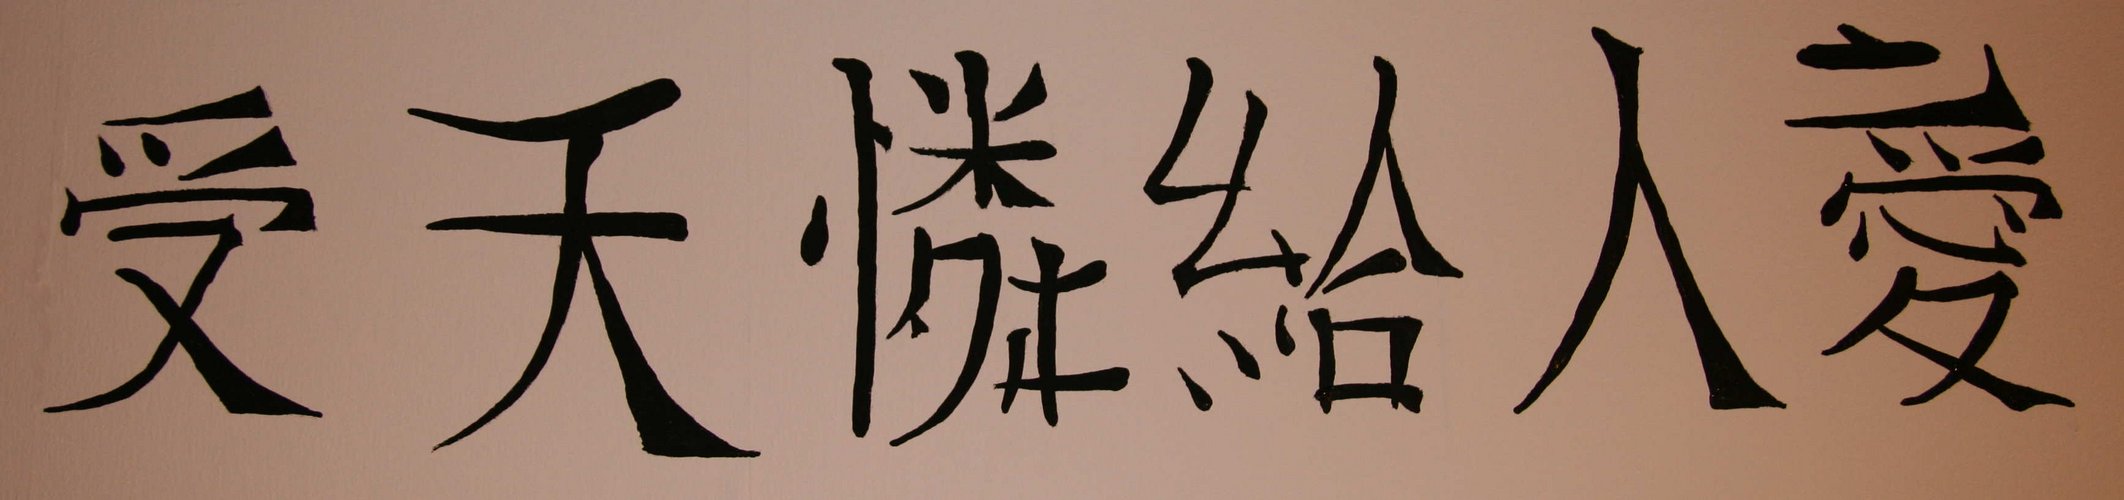 Chinesische Schrift